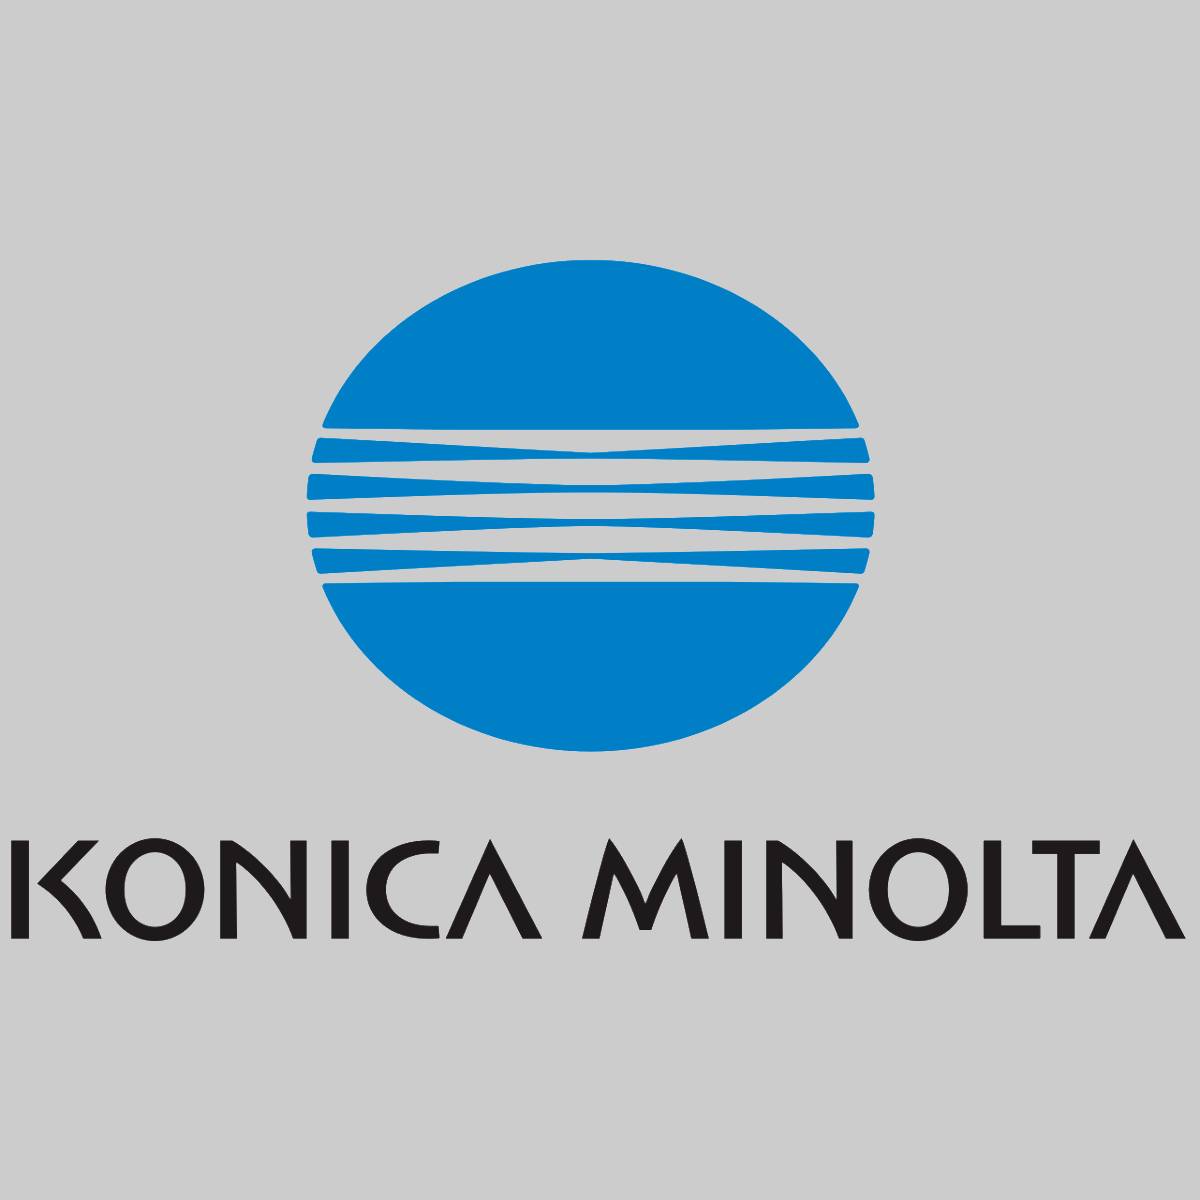 "Original Konica Minolta Y1 Toner Yellow 8935-124 für 7723 7823 7873 CF900 CF910